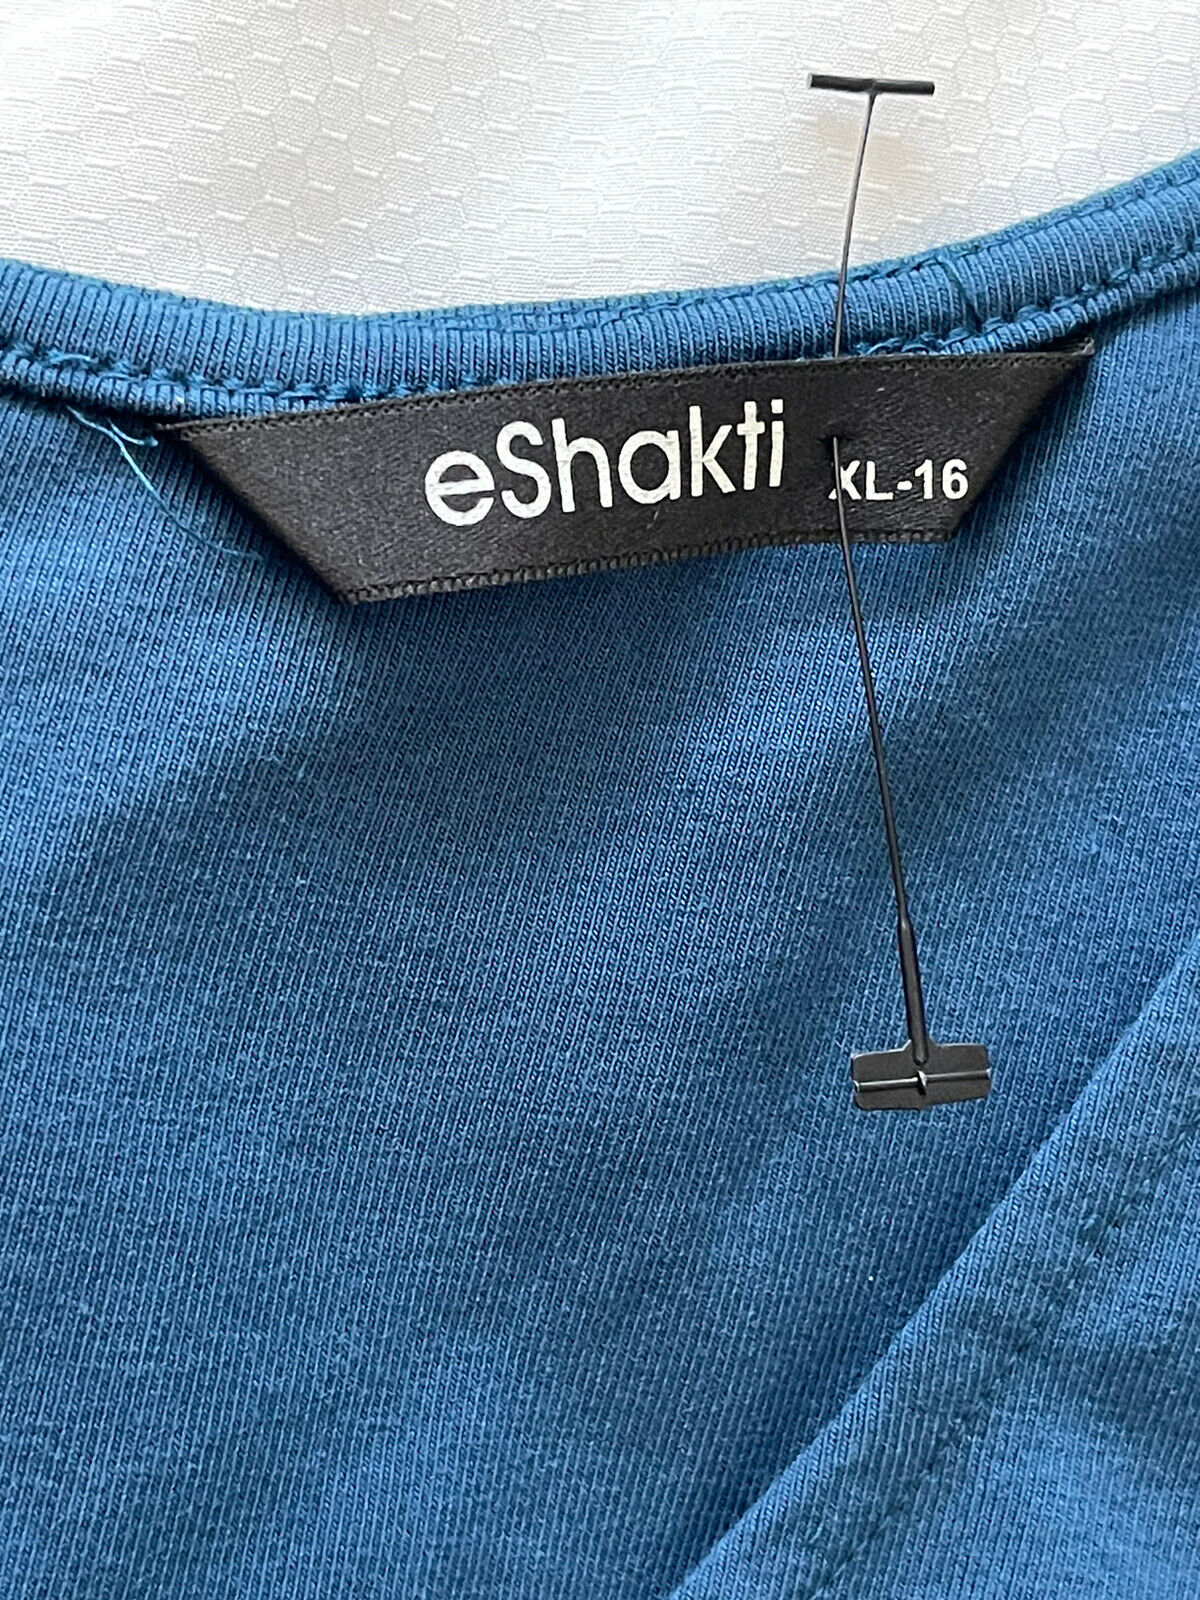 Eshakti Dress Women’s Size XL-16 Cotton/spandex J… - image 3